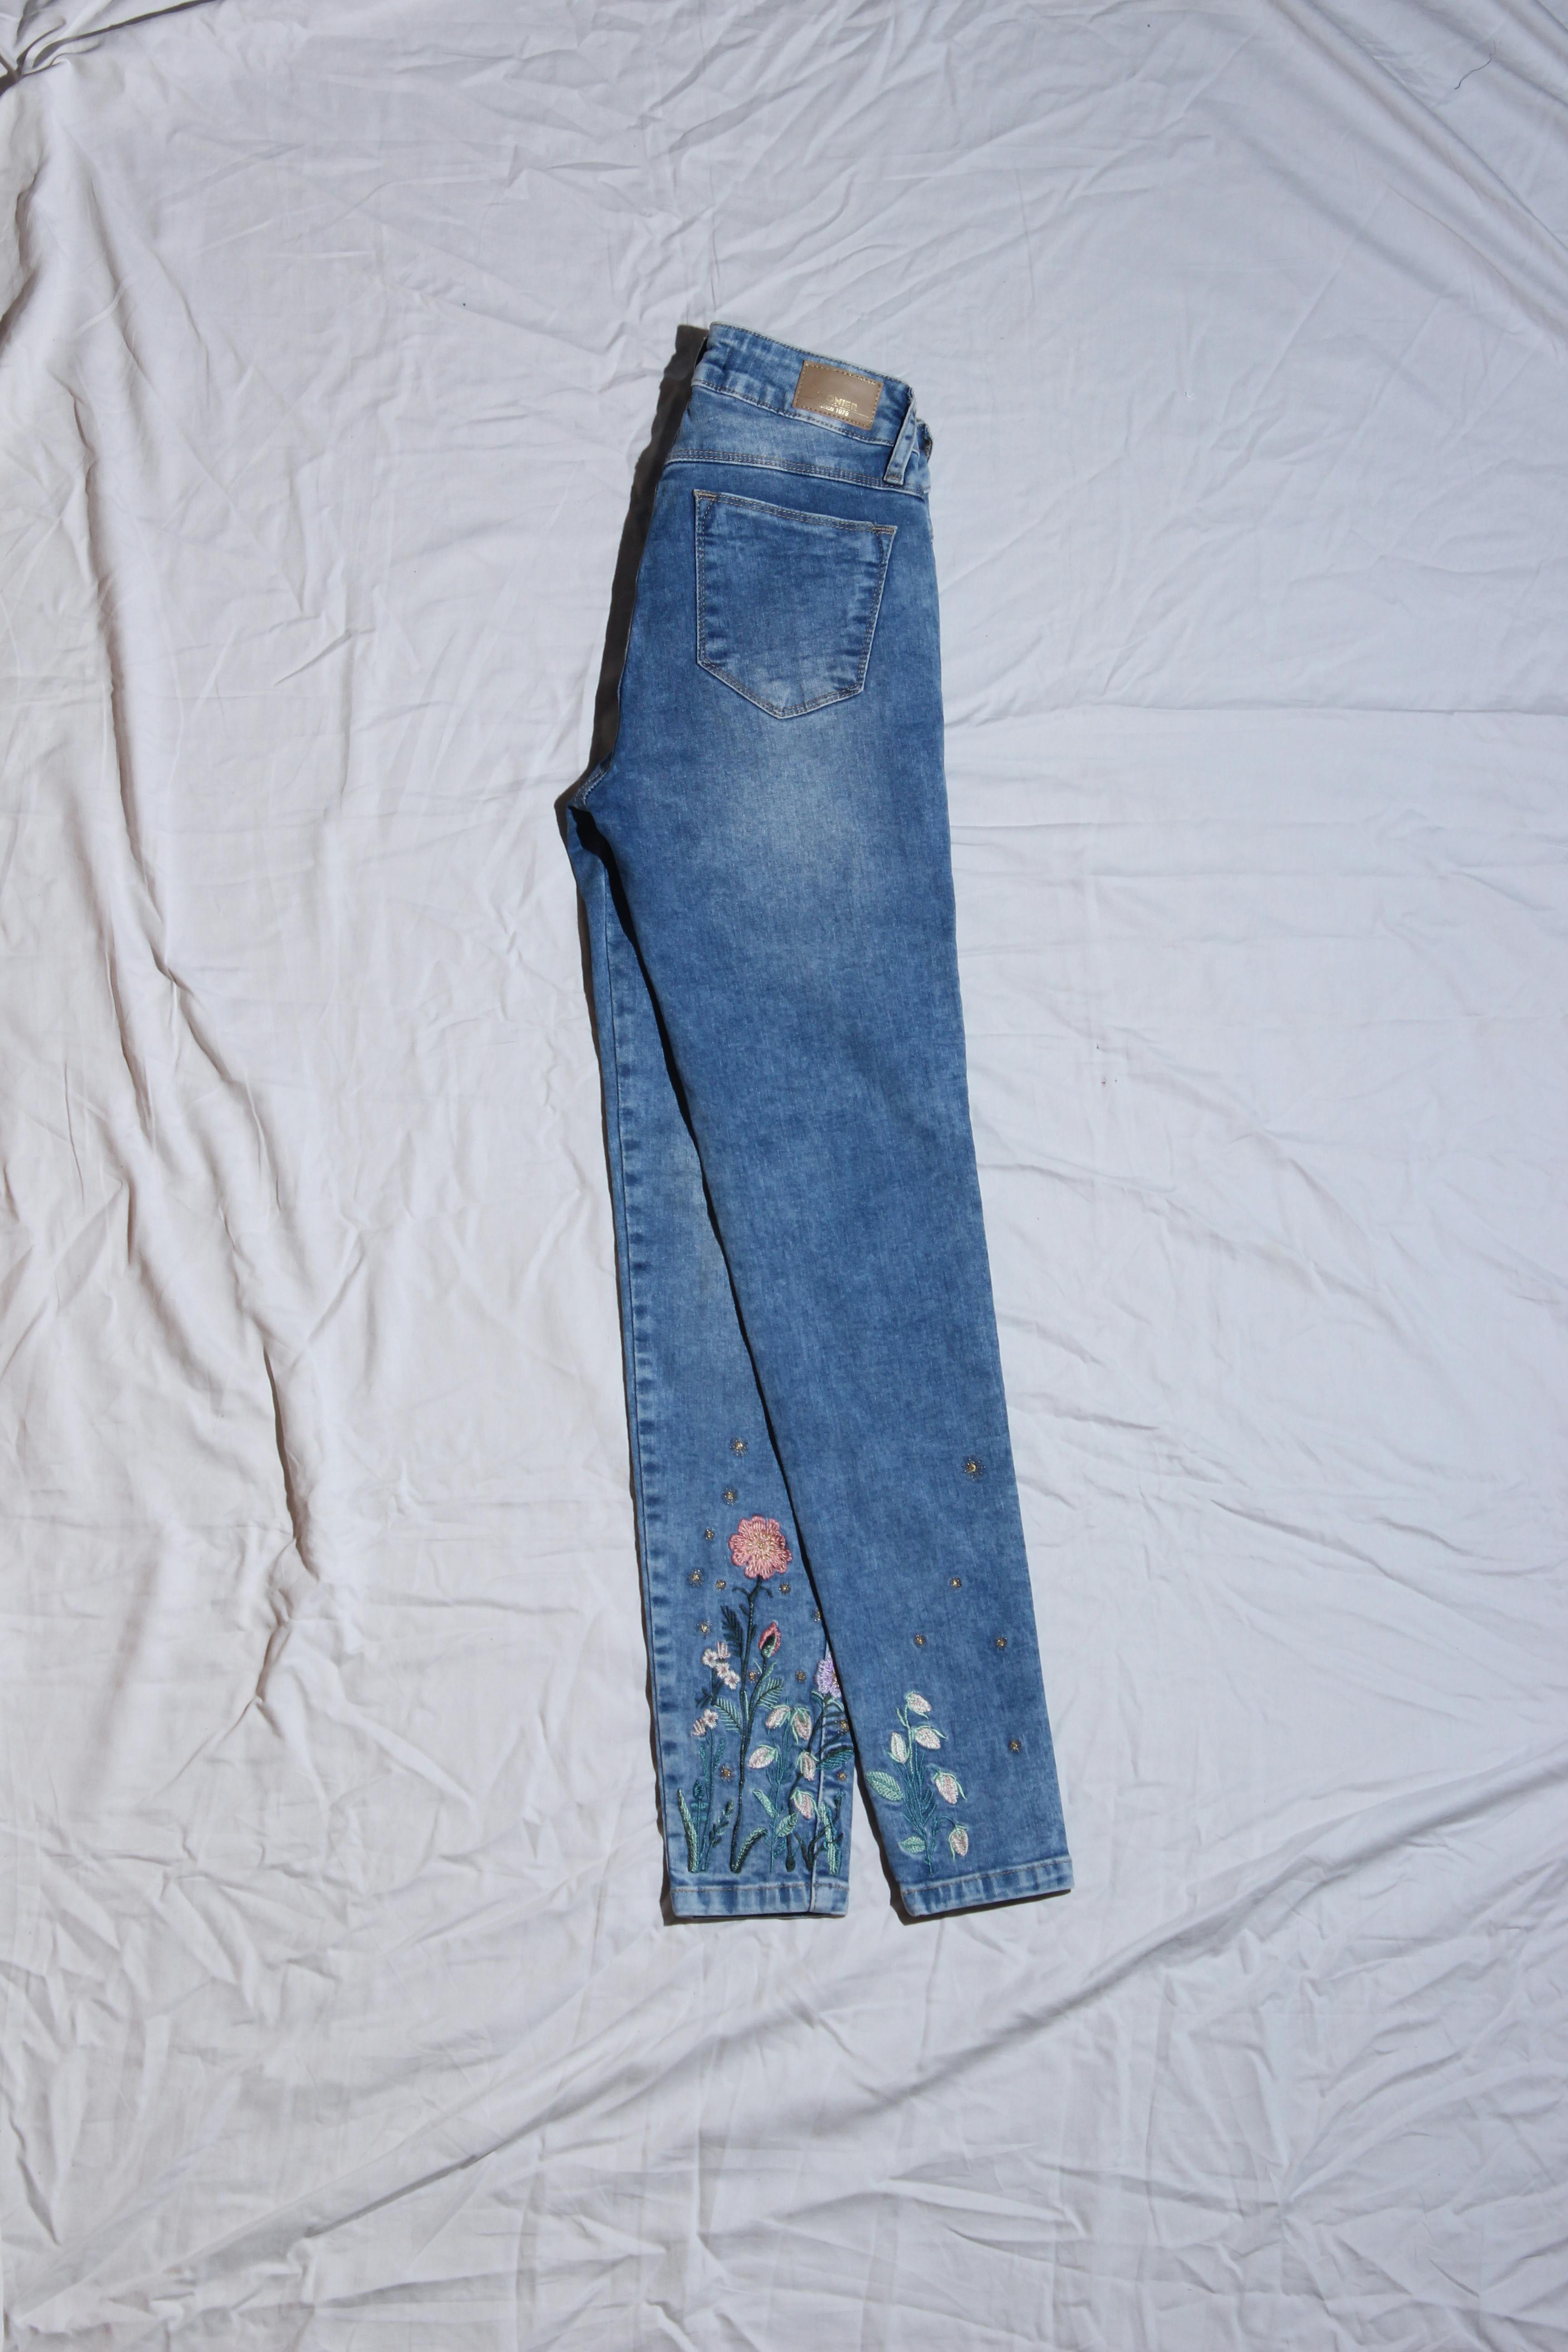 Skinny jean Pioner celeste con bolsillos, cierre y botón delanteros, bolsillos posteriores y bordados florales en la basta Cintura 60 cm Largo 90 cm